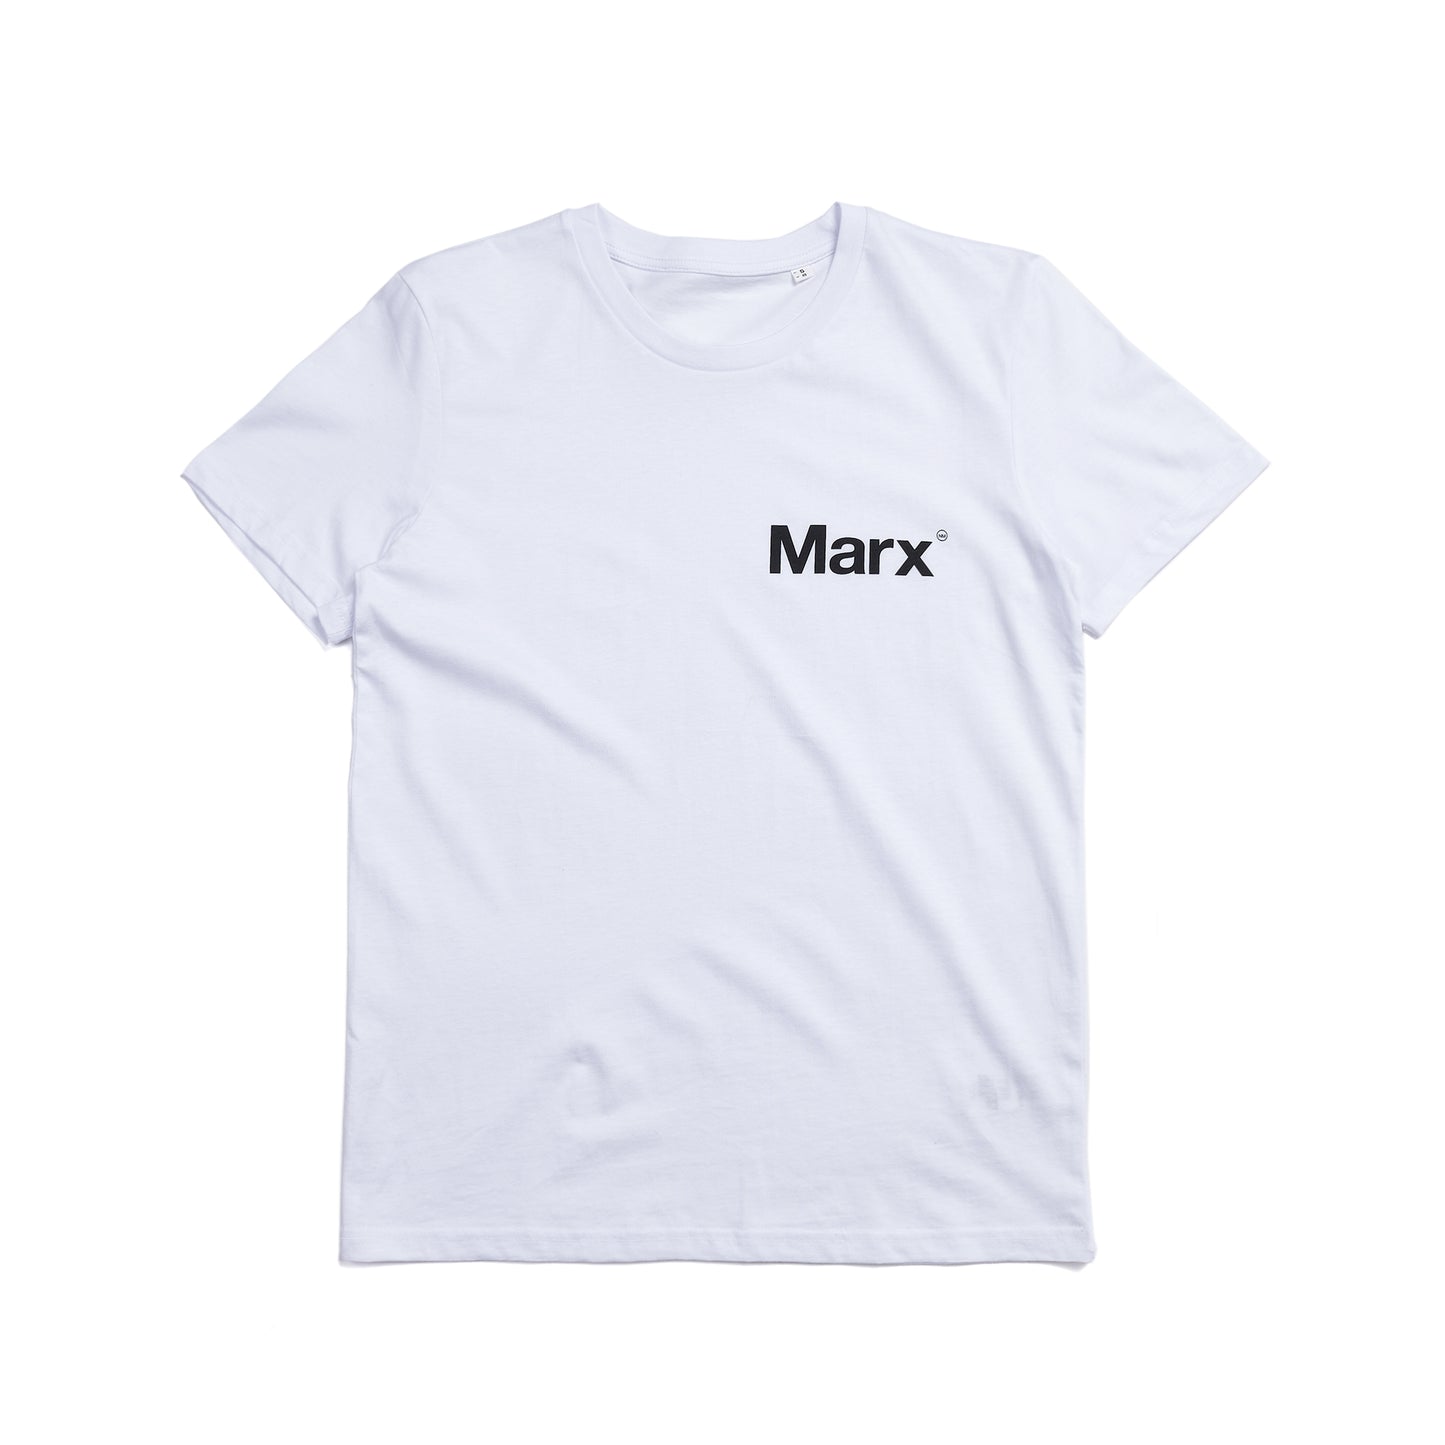 Marx Short Sleeve White